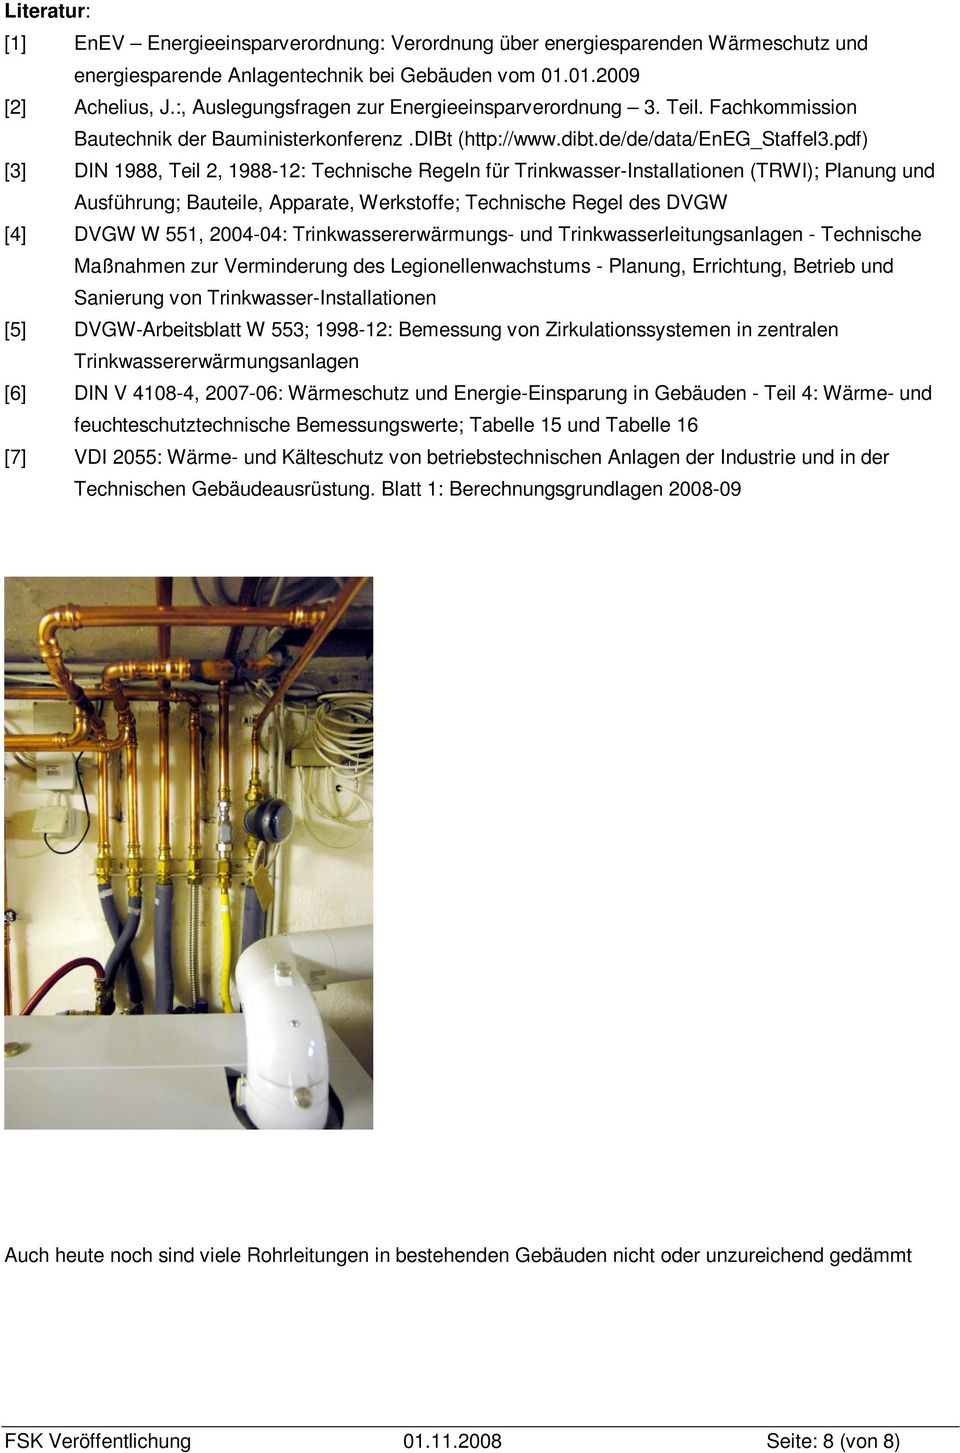 pdf) [3] DIN 1988, Teil 2, 1988-12: Technische Regeln für Trinkwasser-Installationen (TRWI); Planung und Ausführung; Bauteile, Apparate, Werkstoffe; Technische Regel des DVGW [4] DVGW W 551, 2004-04: